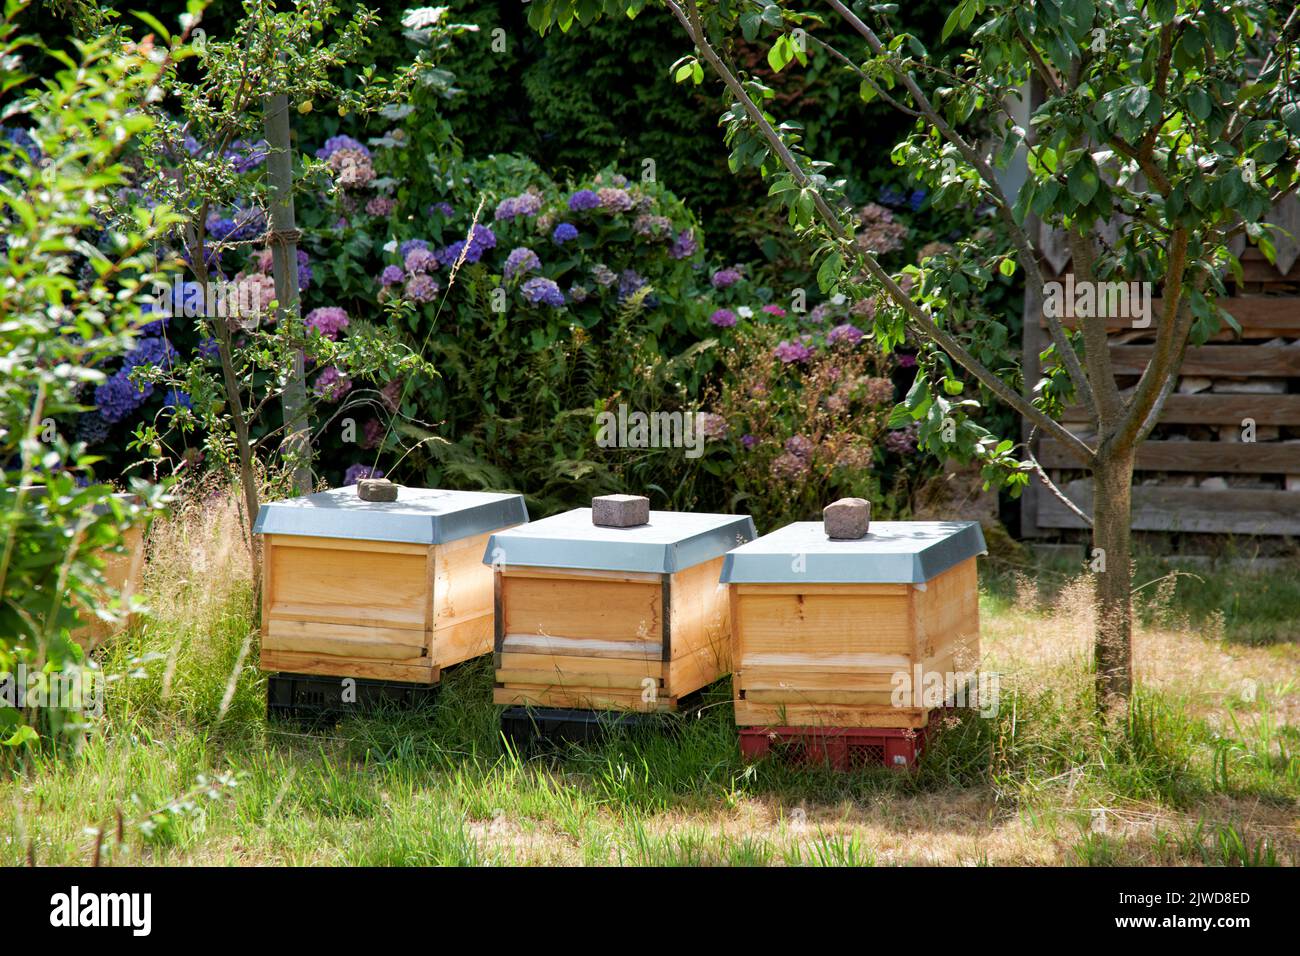 Bienenstoecke stehen auf einem Gartengelaende in einem Wohngebiet im hohen Gras. Stock Photo